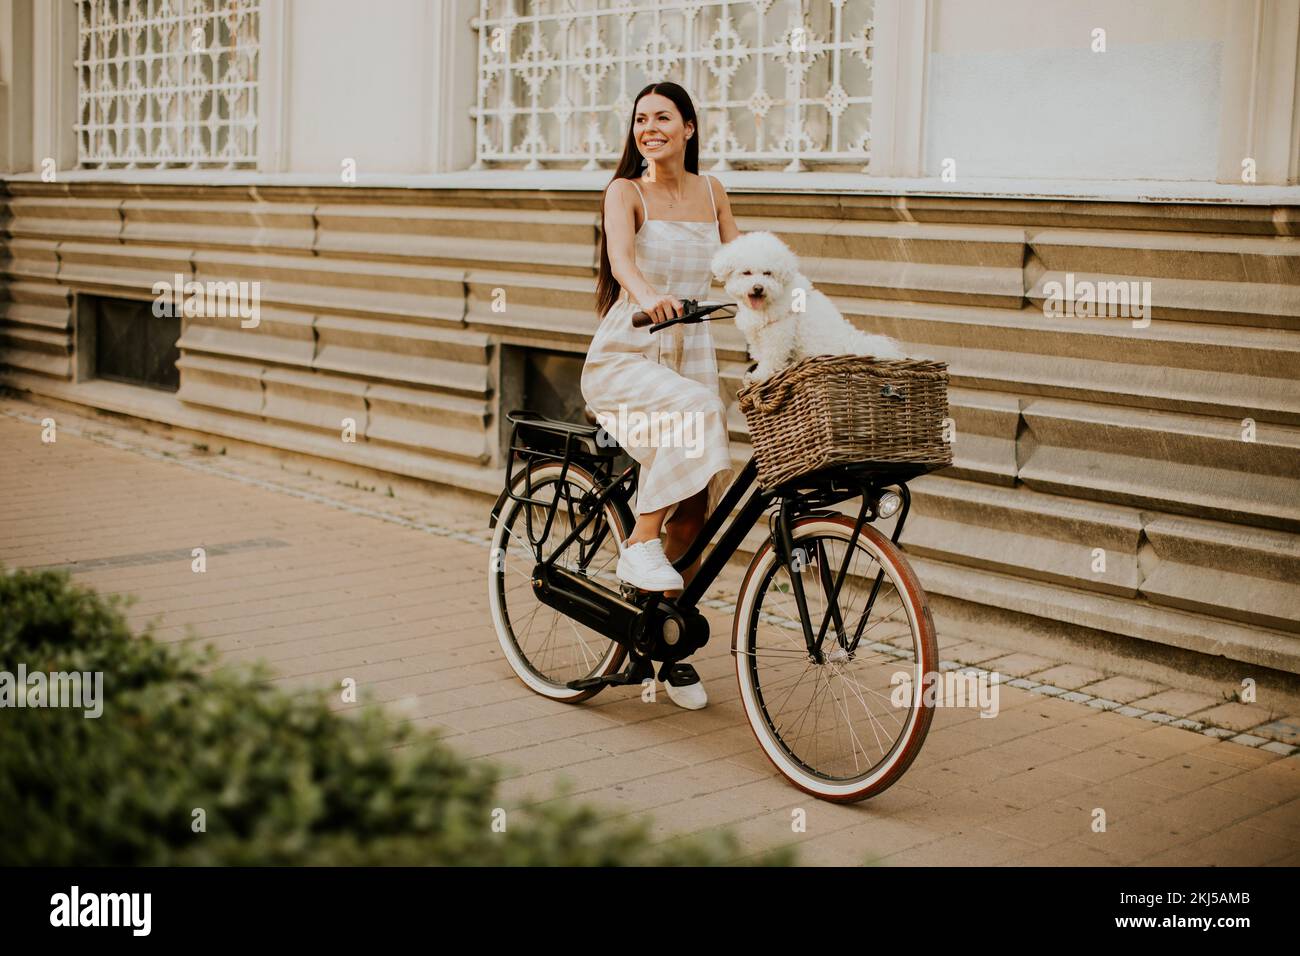 Hübsche junge Frau mit weißem bichon Frisehund im Korb mit Elektrofahrrad Stockfoto